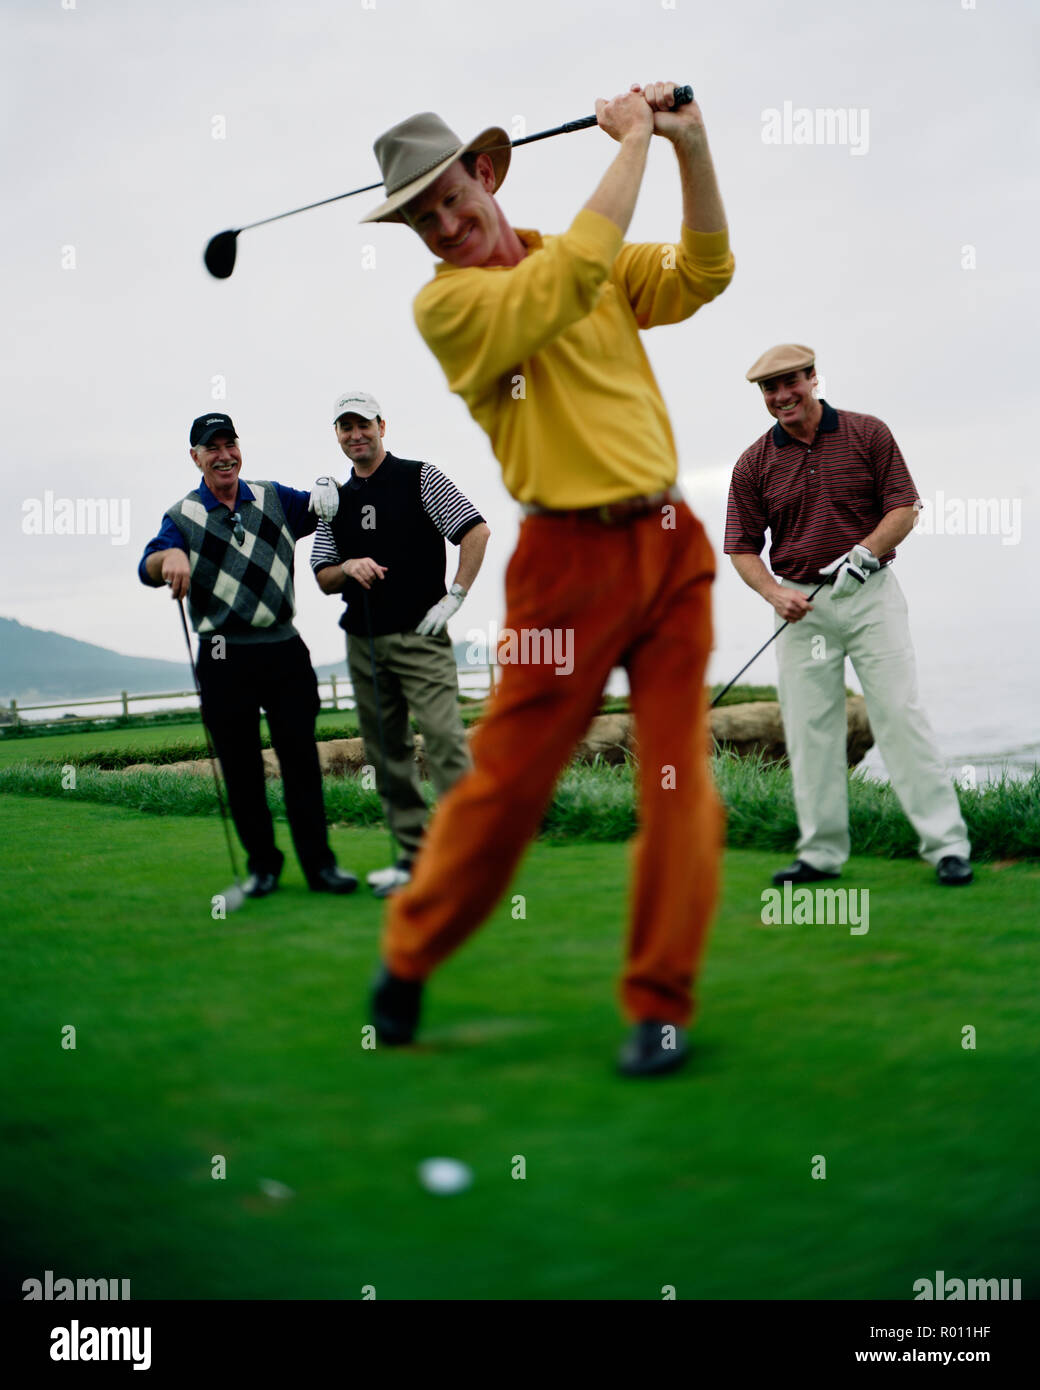 Swing golf club Average Golf